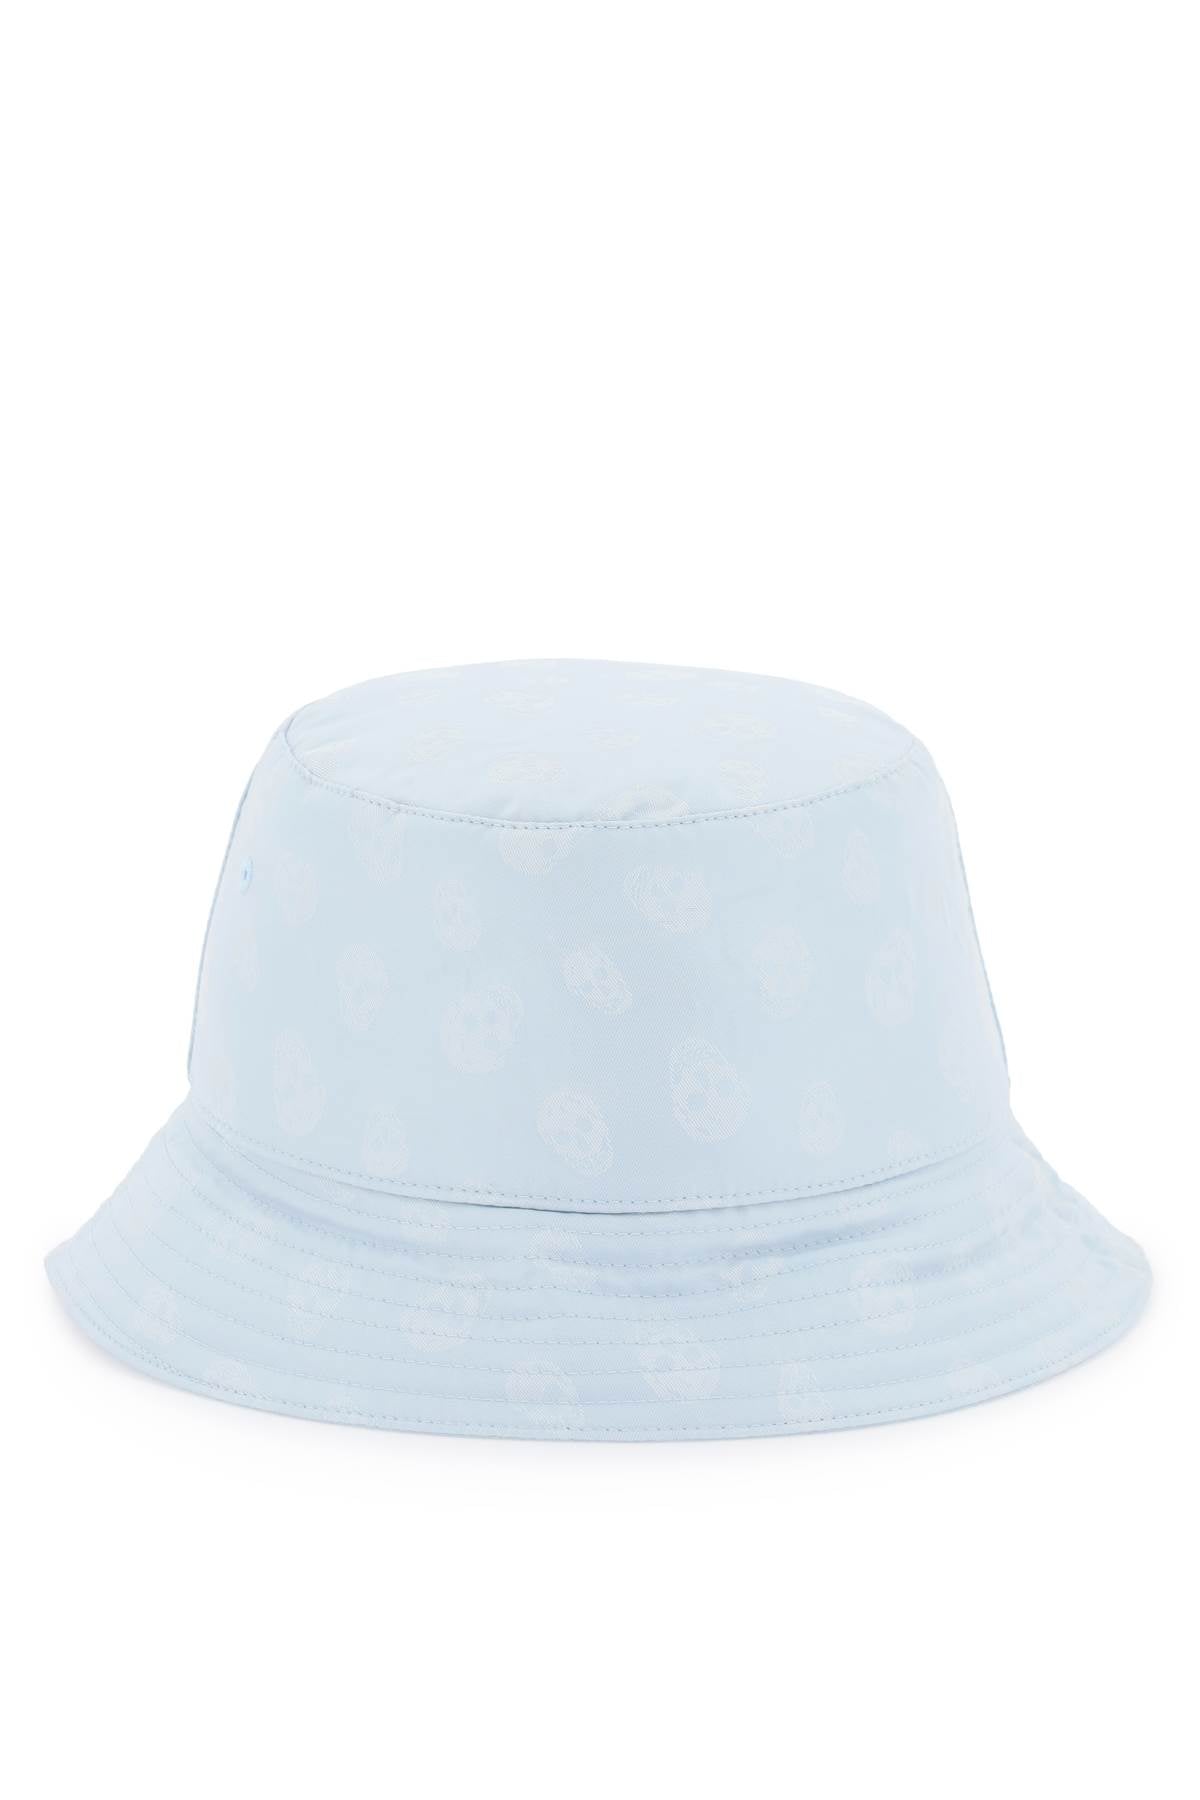 McQueen Skull Bucket Hat in Light Blue